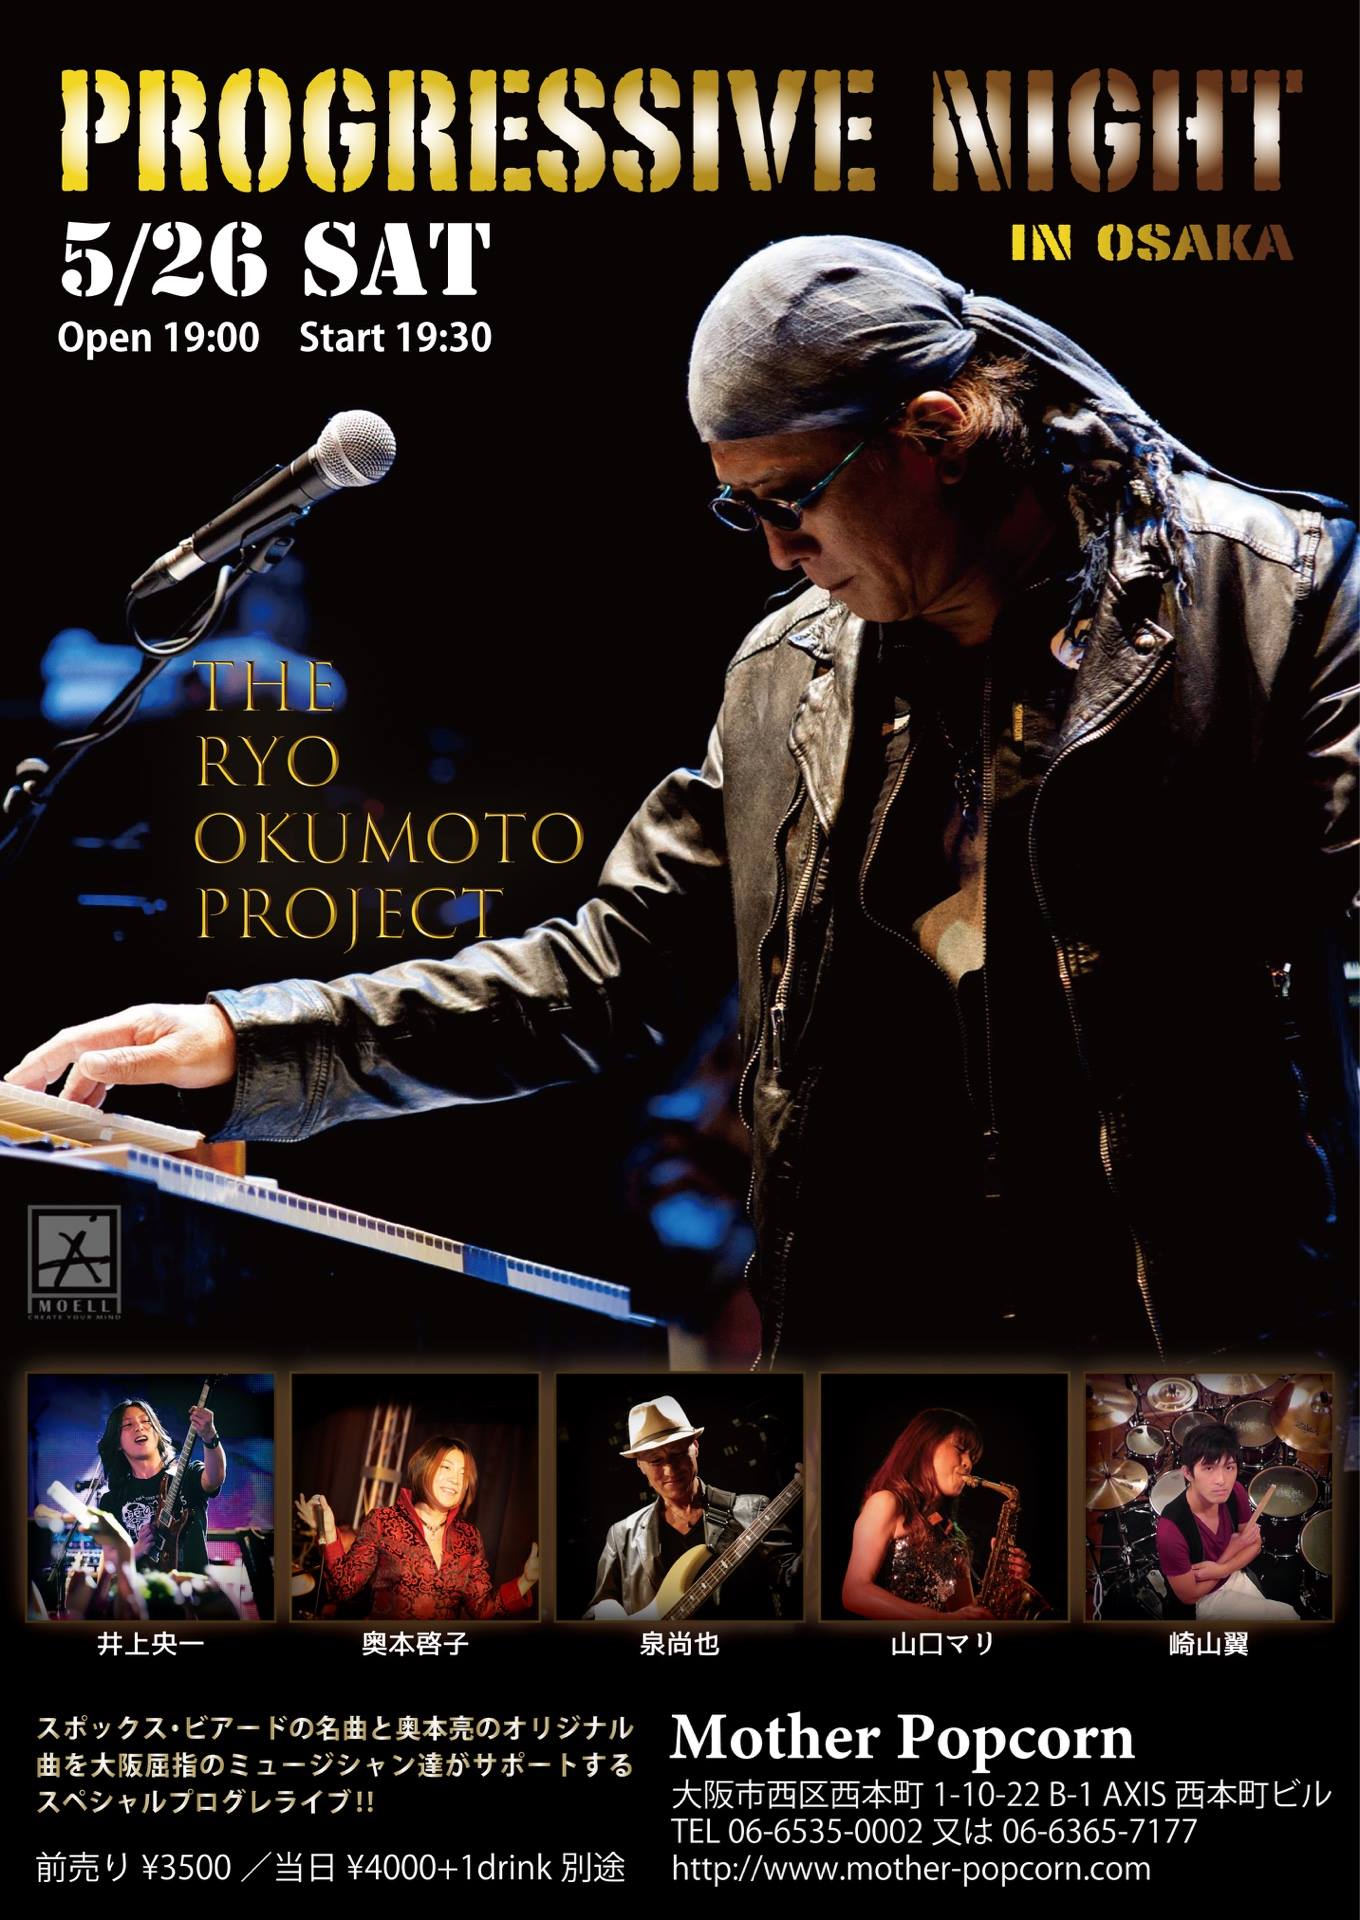 The Ryo Okumoto Project Live in Osaka